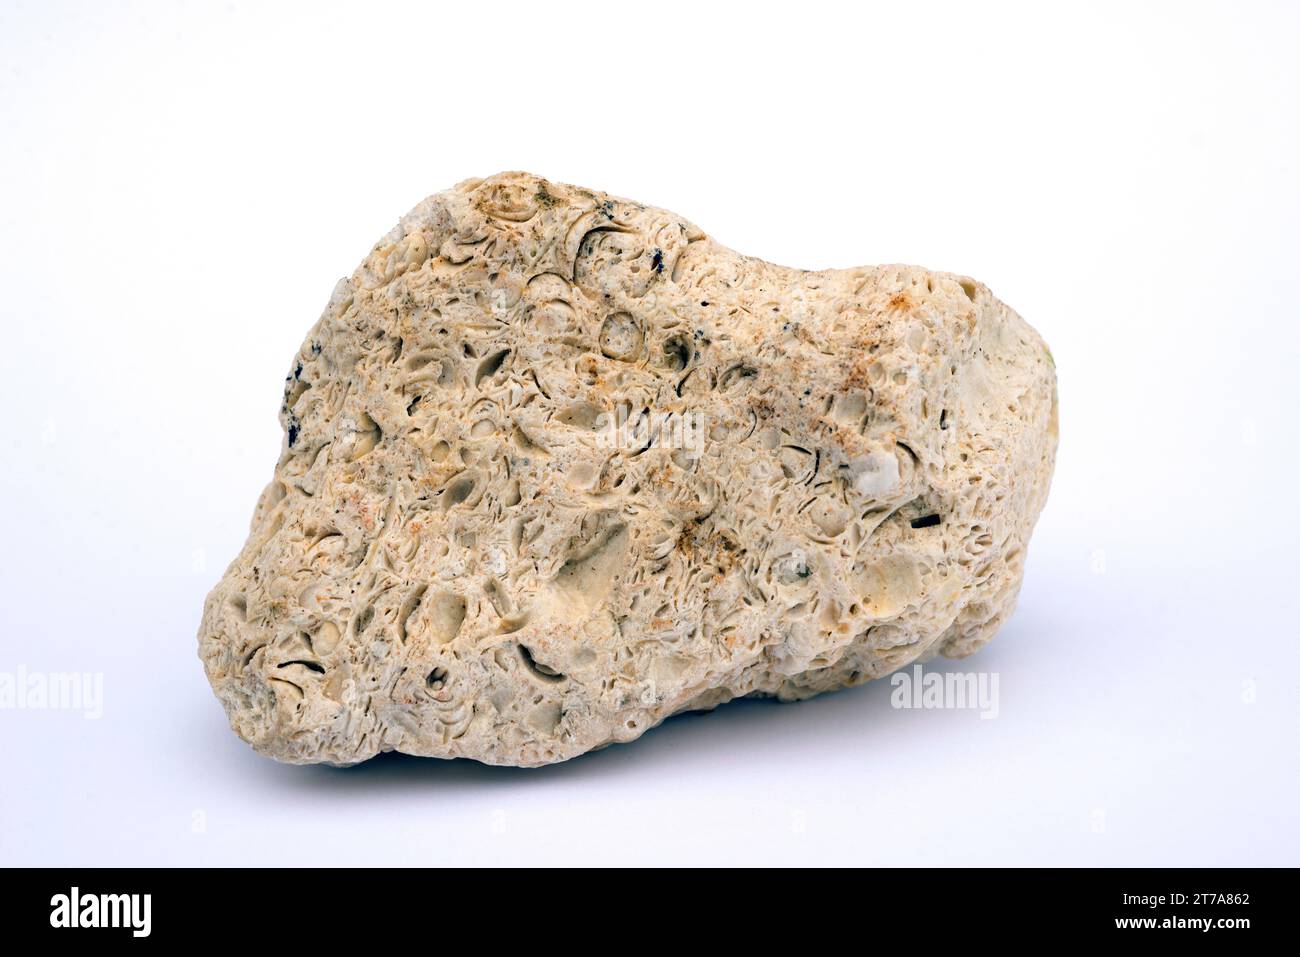 Coquina est une sorte de calcaire fossilifère. Le calcaire est une roche sédimentaire de carbonate. Cet échantillon provient de Cadix, Andalousie, Espagne. Banque D'Images